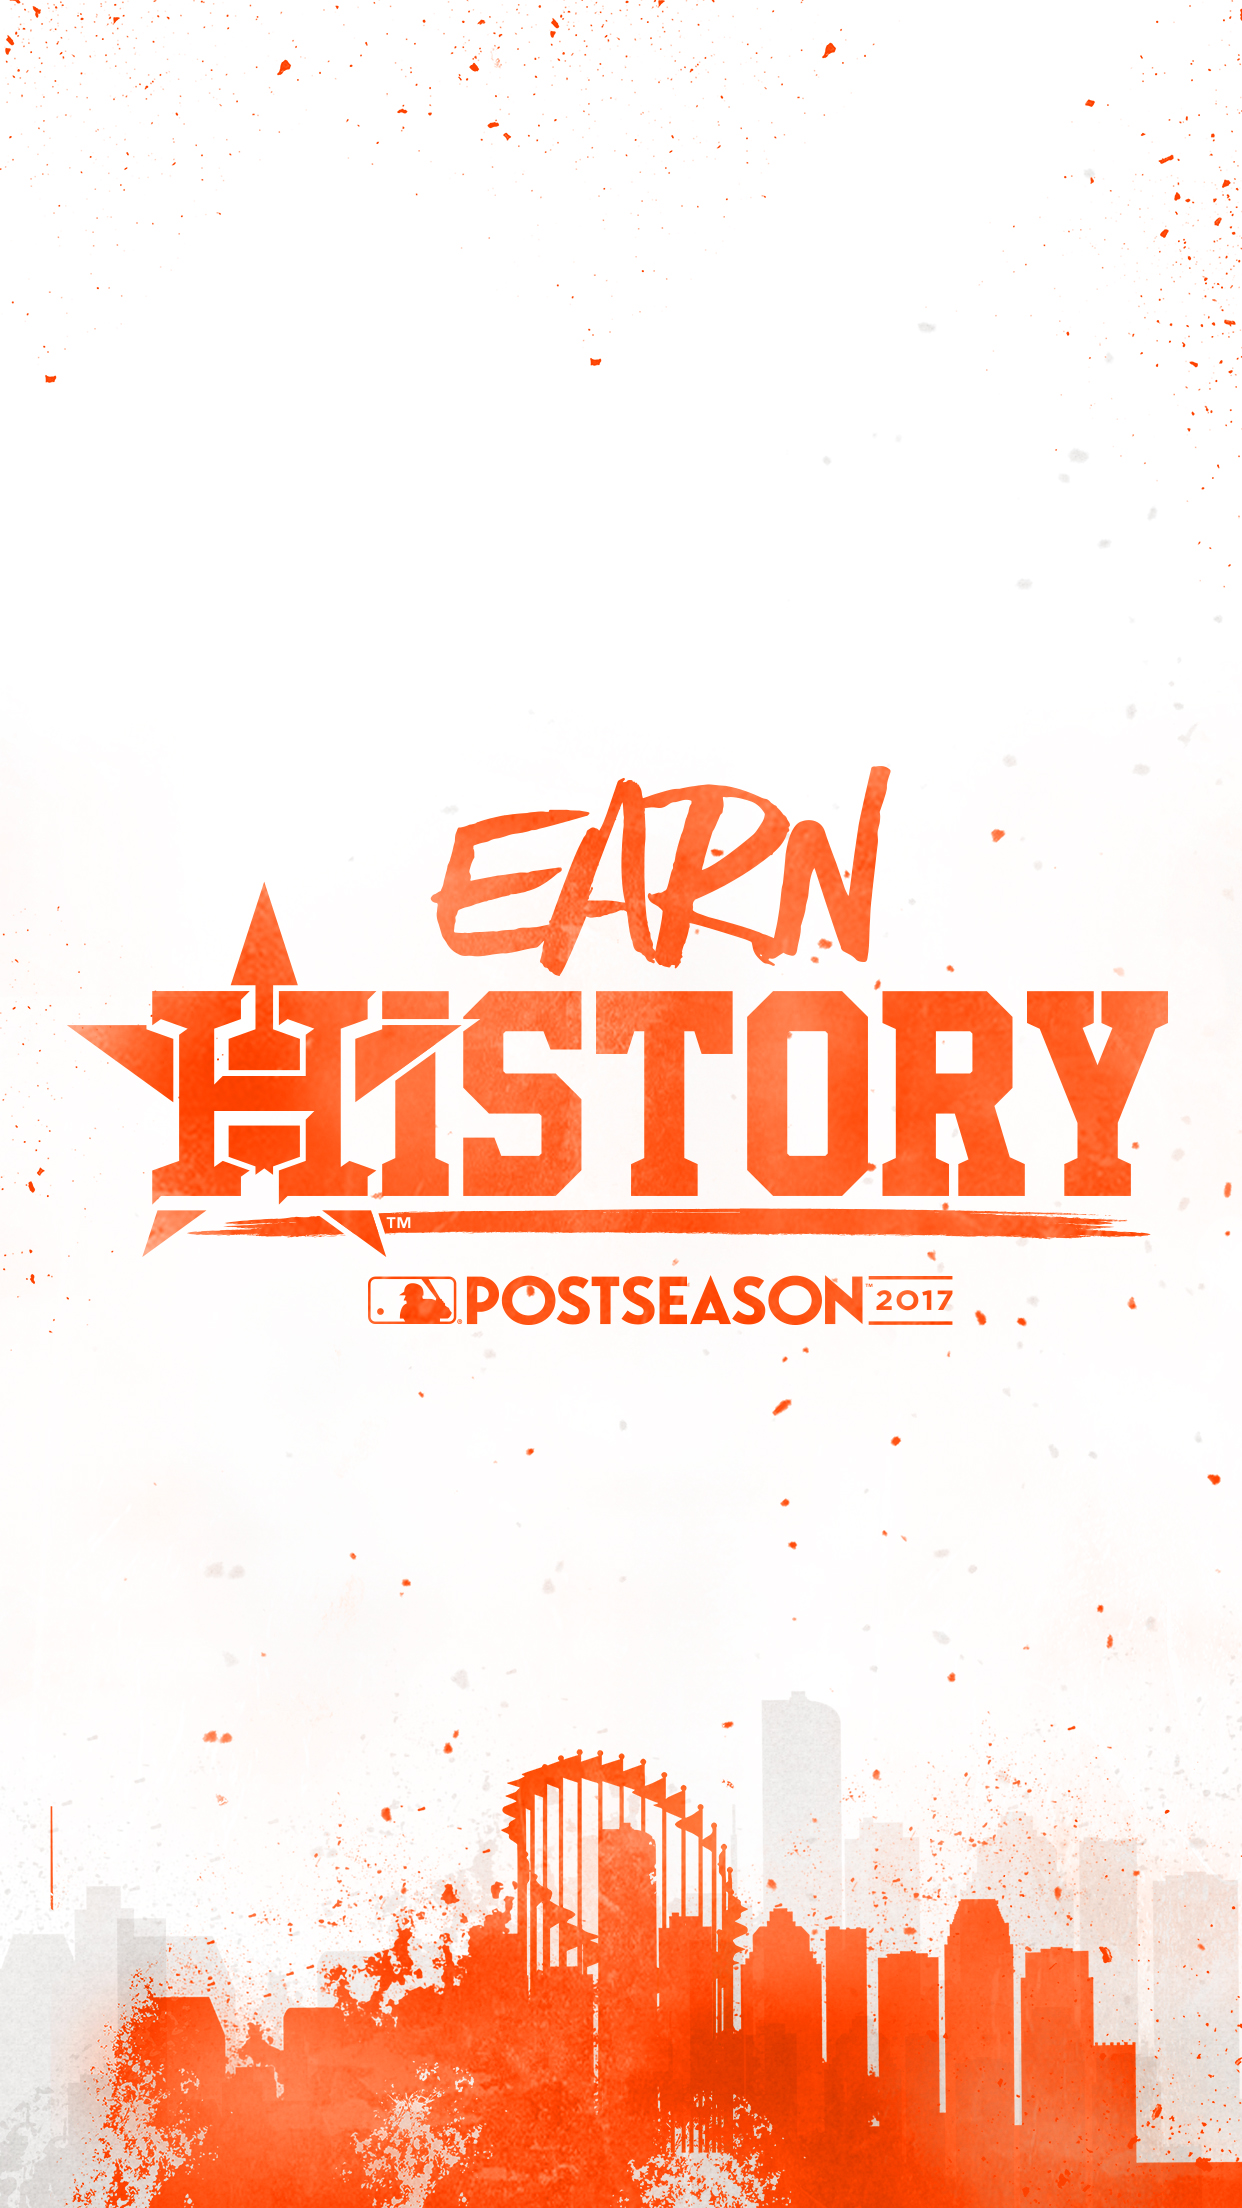 Houston Astros Earn History - HD Wallpaper 